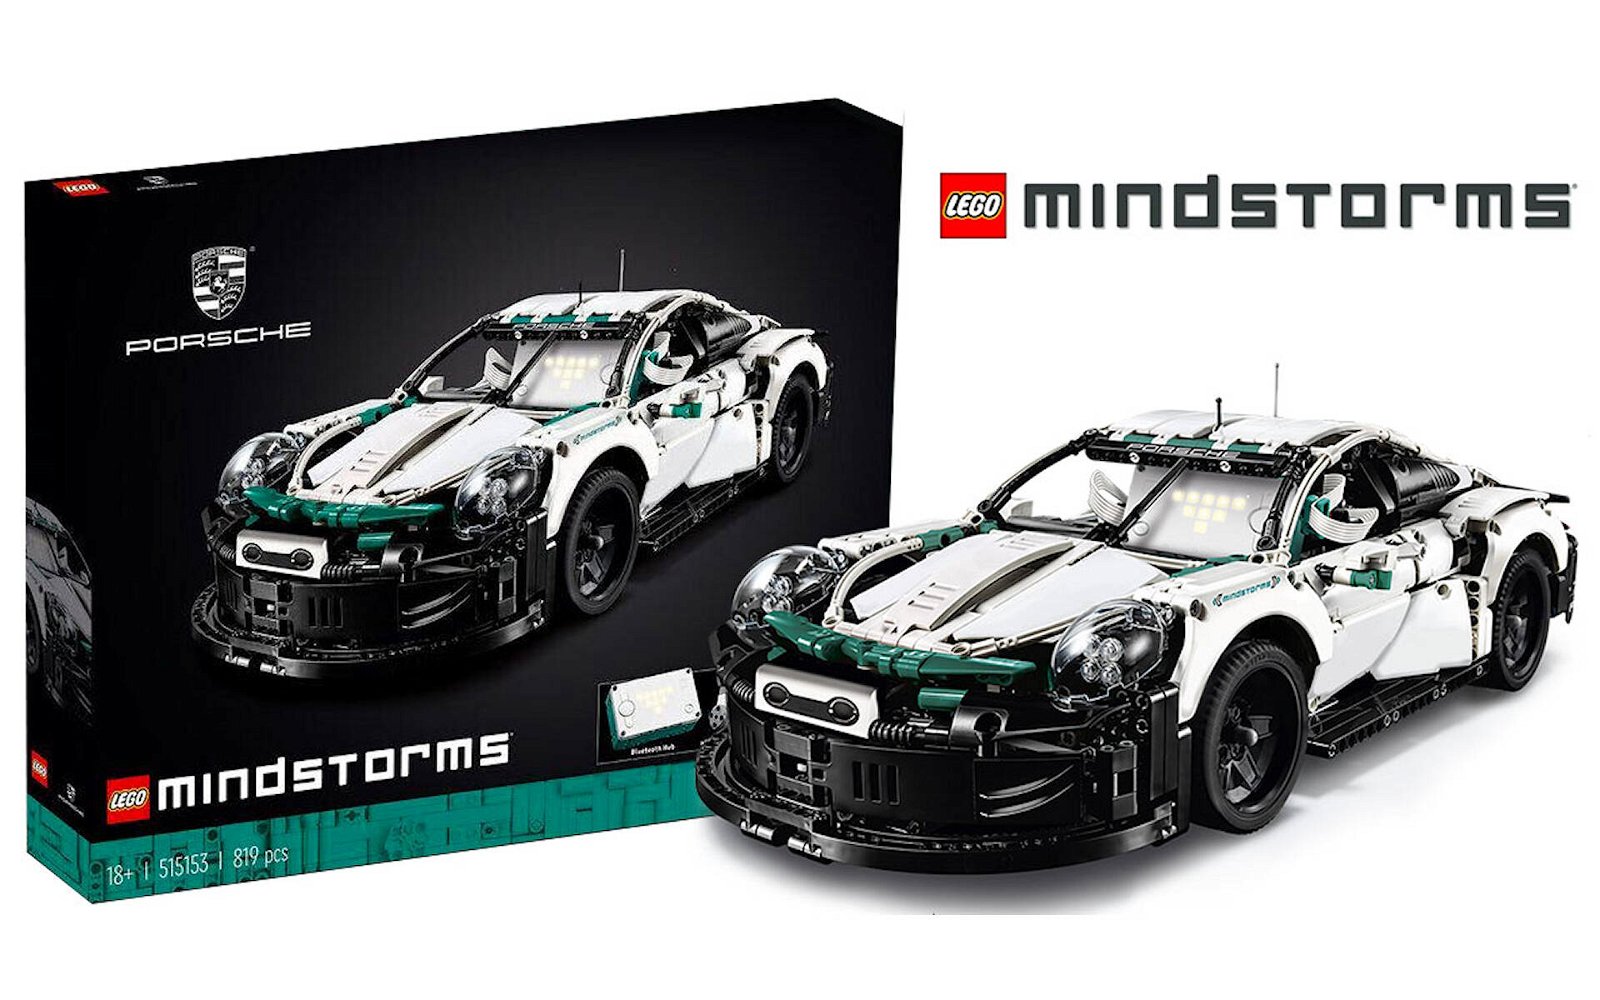 Immagine di Nuovo (e finto) set LEGO MINDSTORMS Porsche rivelato da LEGO LAB per... benchmark!